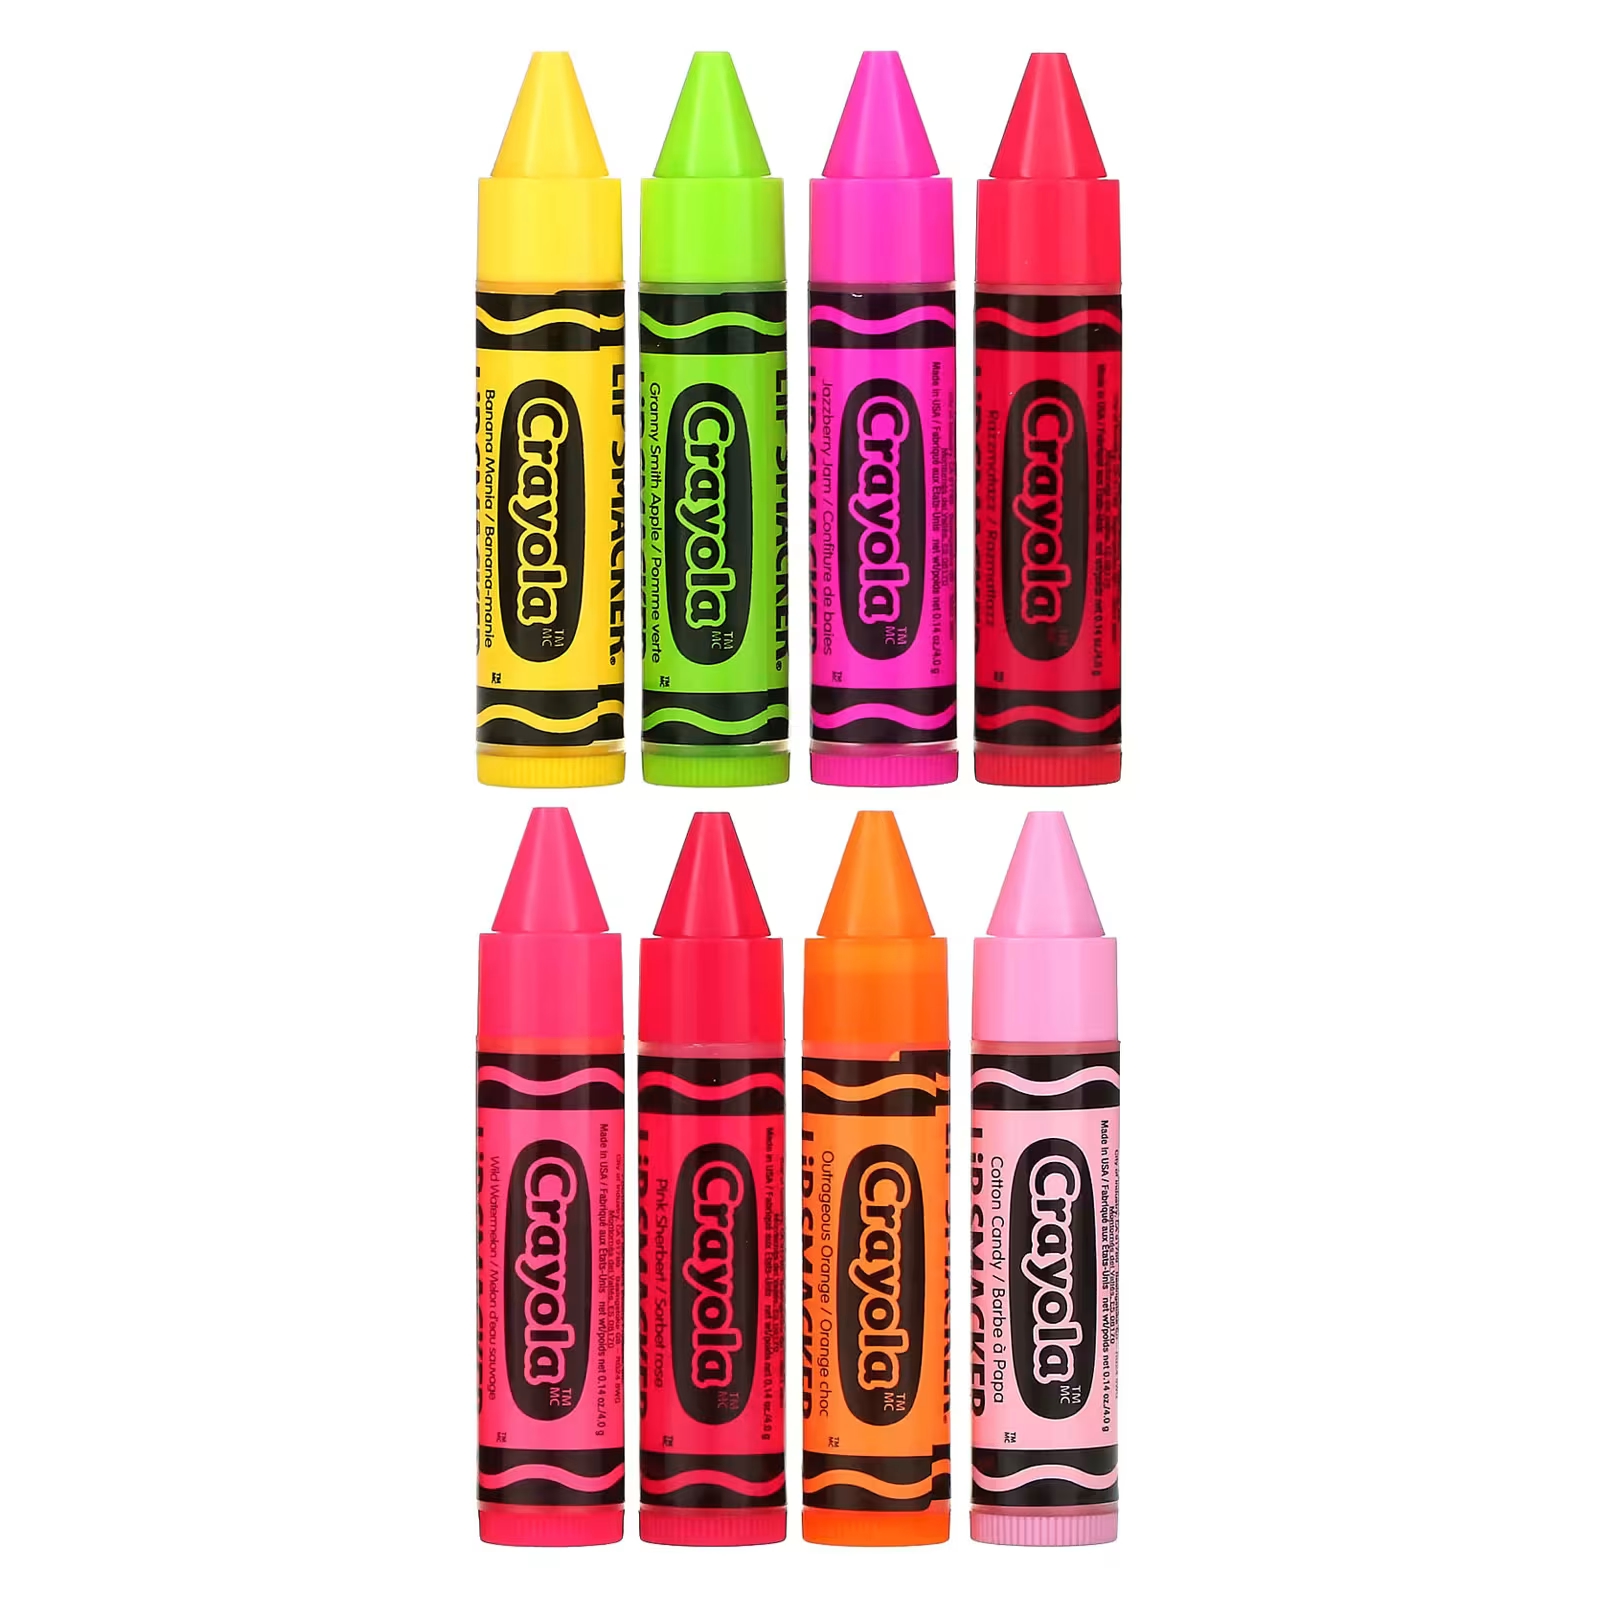 Lip Smacker Crayola Бальзам для губ «Вечеринка», 8 штук по 0,14 унции (4 г) каждая cnmg160608 em ybg205 cnmg160612 em ybg205 cnmg542 cnmg543 zcc ct карбидные вставки cnc для нержавеющей стали 10 шт коробка